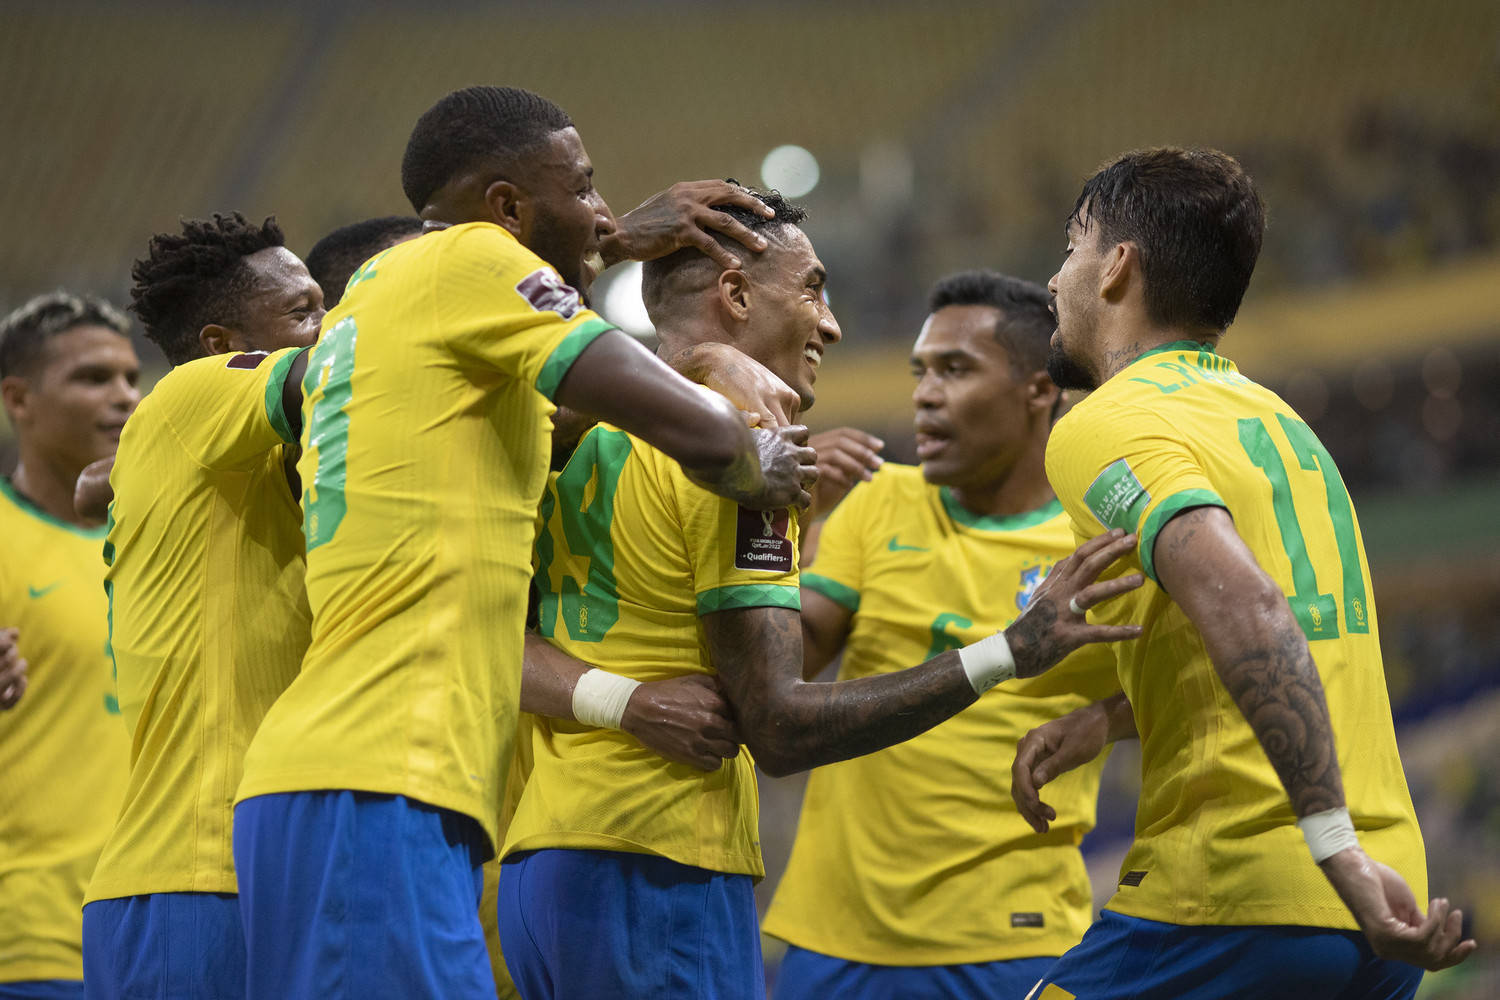 Brasil vence o Uruguai por 4 a 1 na Arena da Amazônia. Veja fotos - Fotos -  R7 Futebol